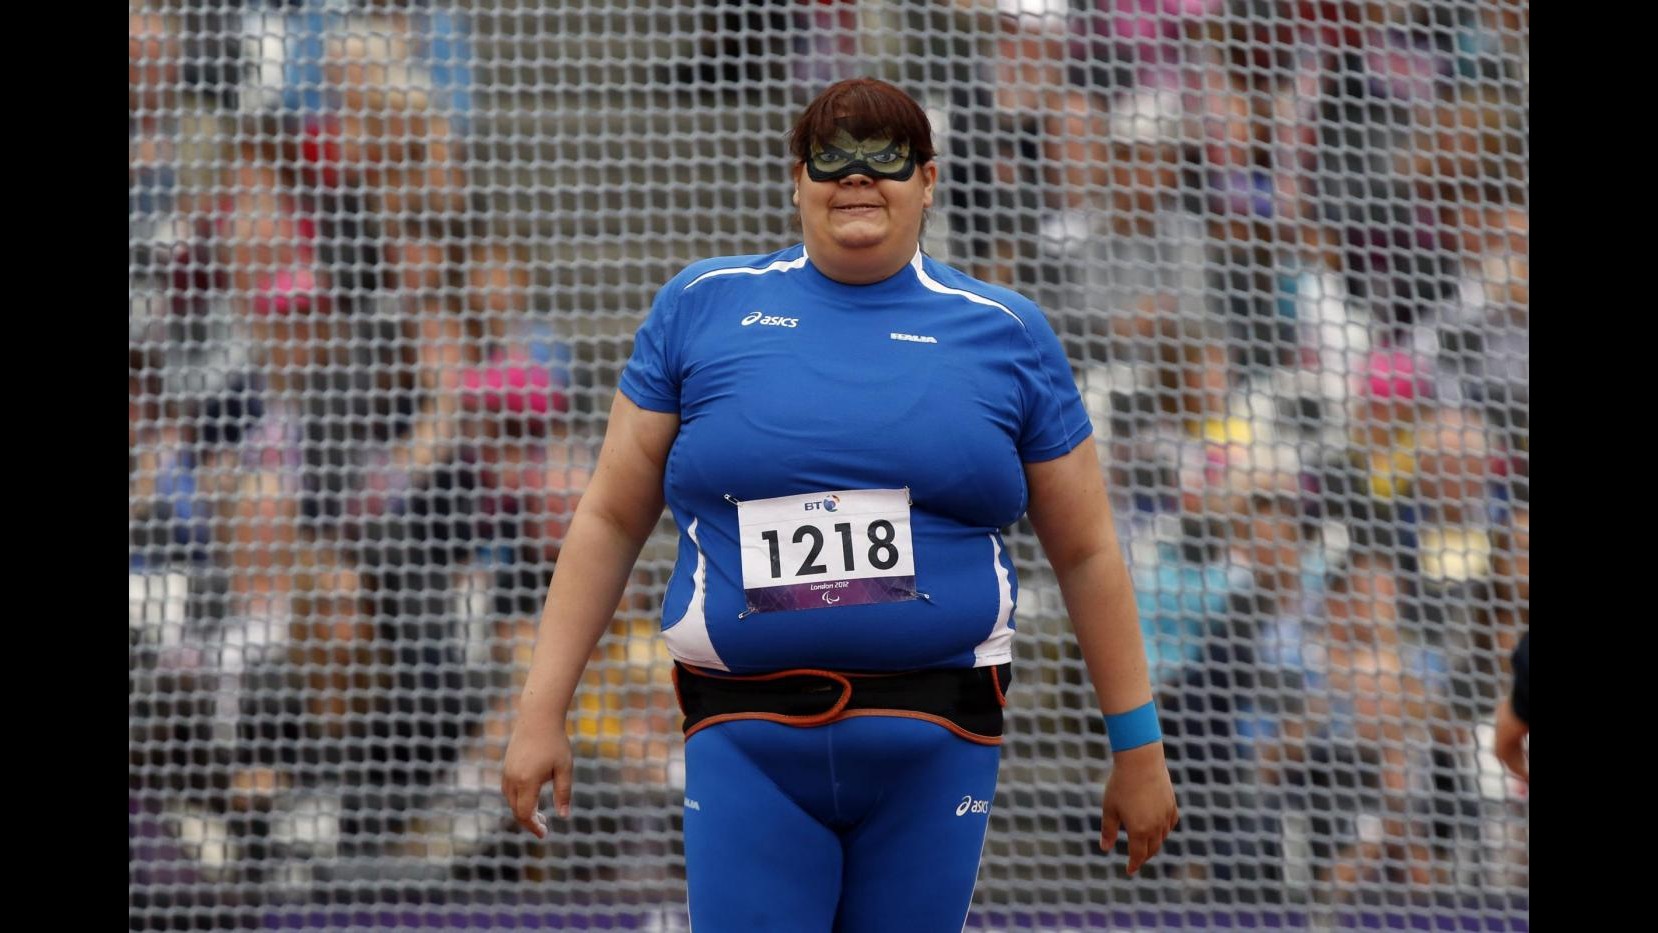 Paralimpiadi, lancio peso: oro e record del mondo per Assunta Legnante